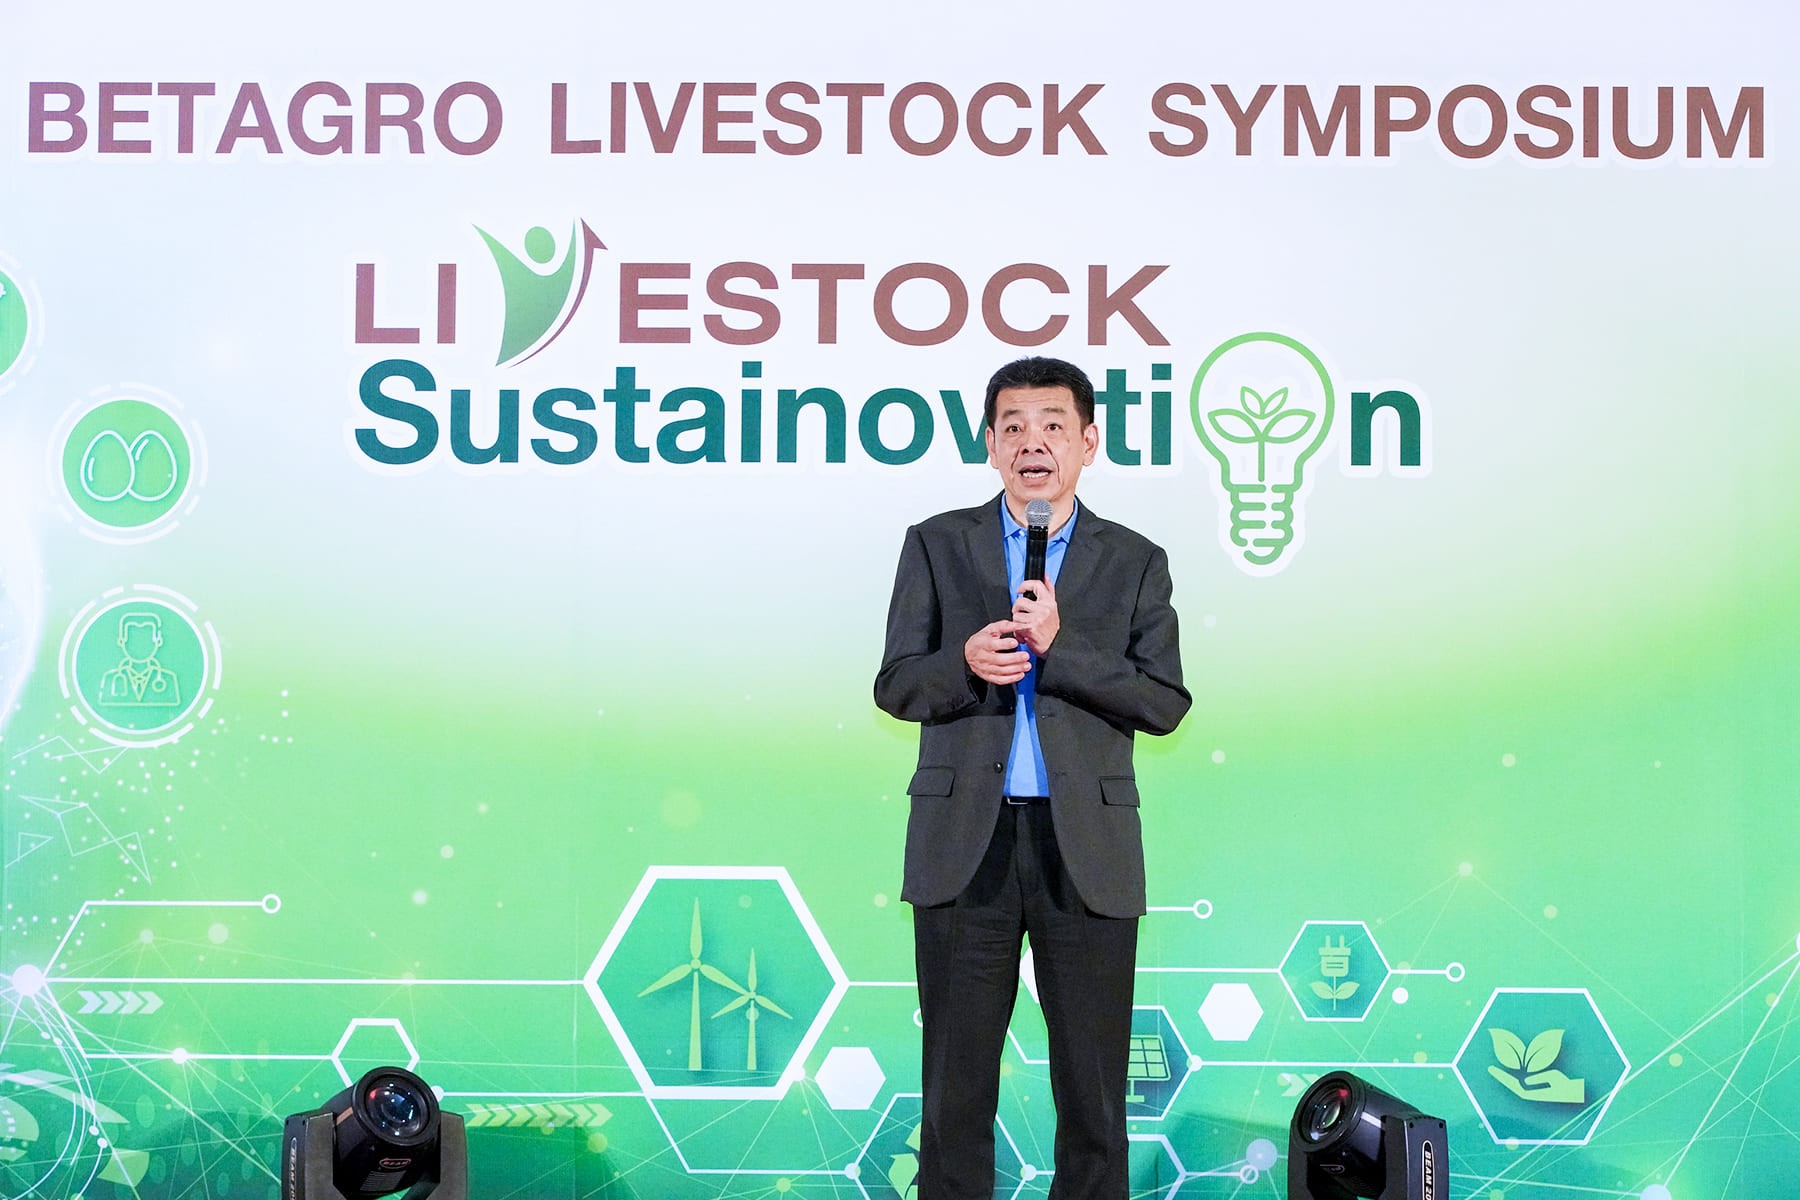 BTG จัดงาน “Livestock Symposium” ต่อเนื่องเป็นปีที่ 10